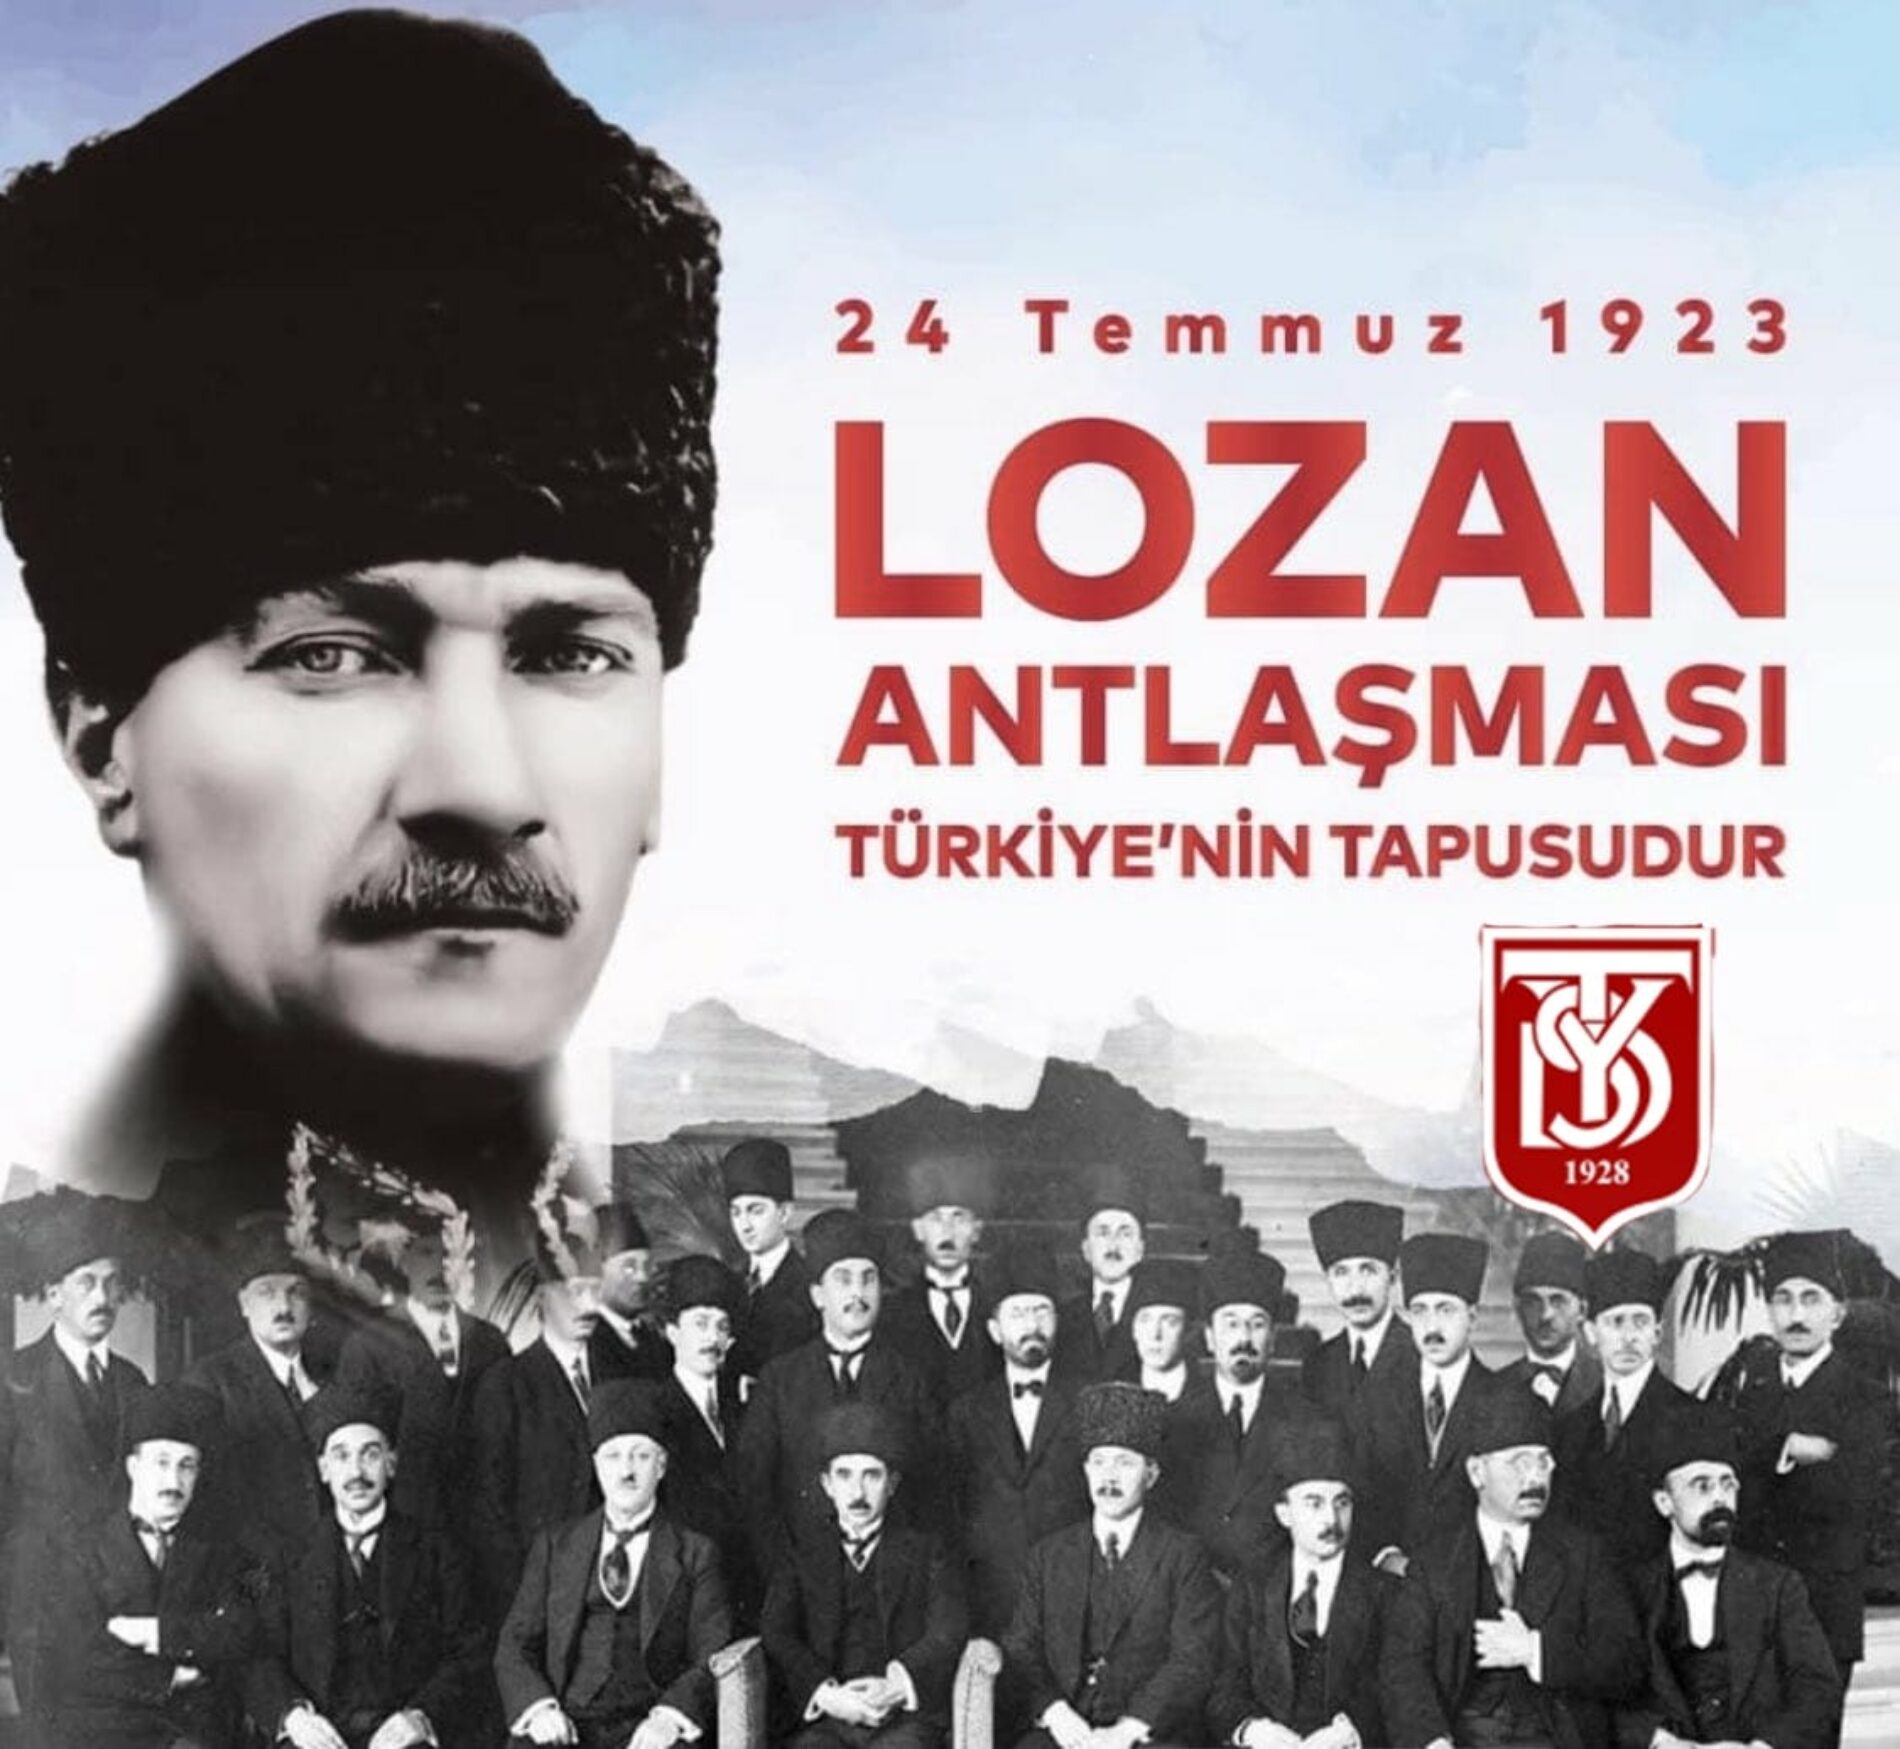 TYSD Genel Merkezi ve 130 Şubemiz Lozan Barış Antlaşmasının 99. Yılında Gazi Mustafa Kemal Atatürk’ü Silah Arkadaşlarını ve Tüm Şehitleri Rahmet ve Minnetle Anmaktadır